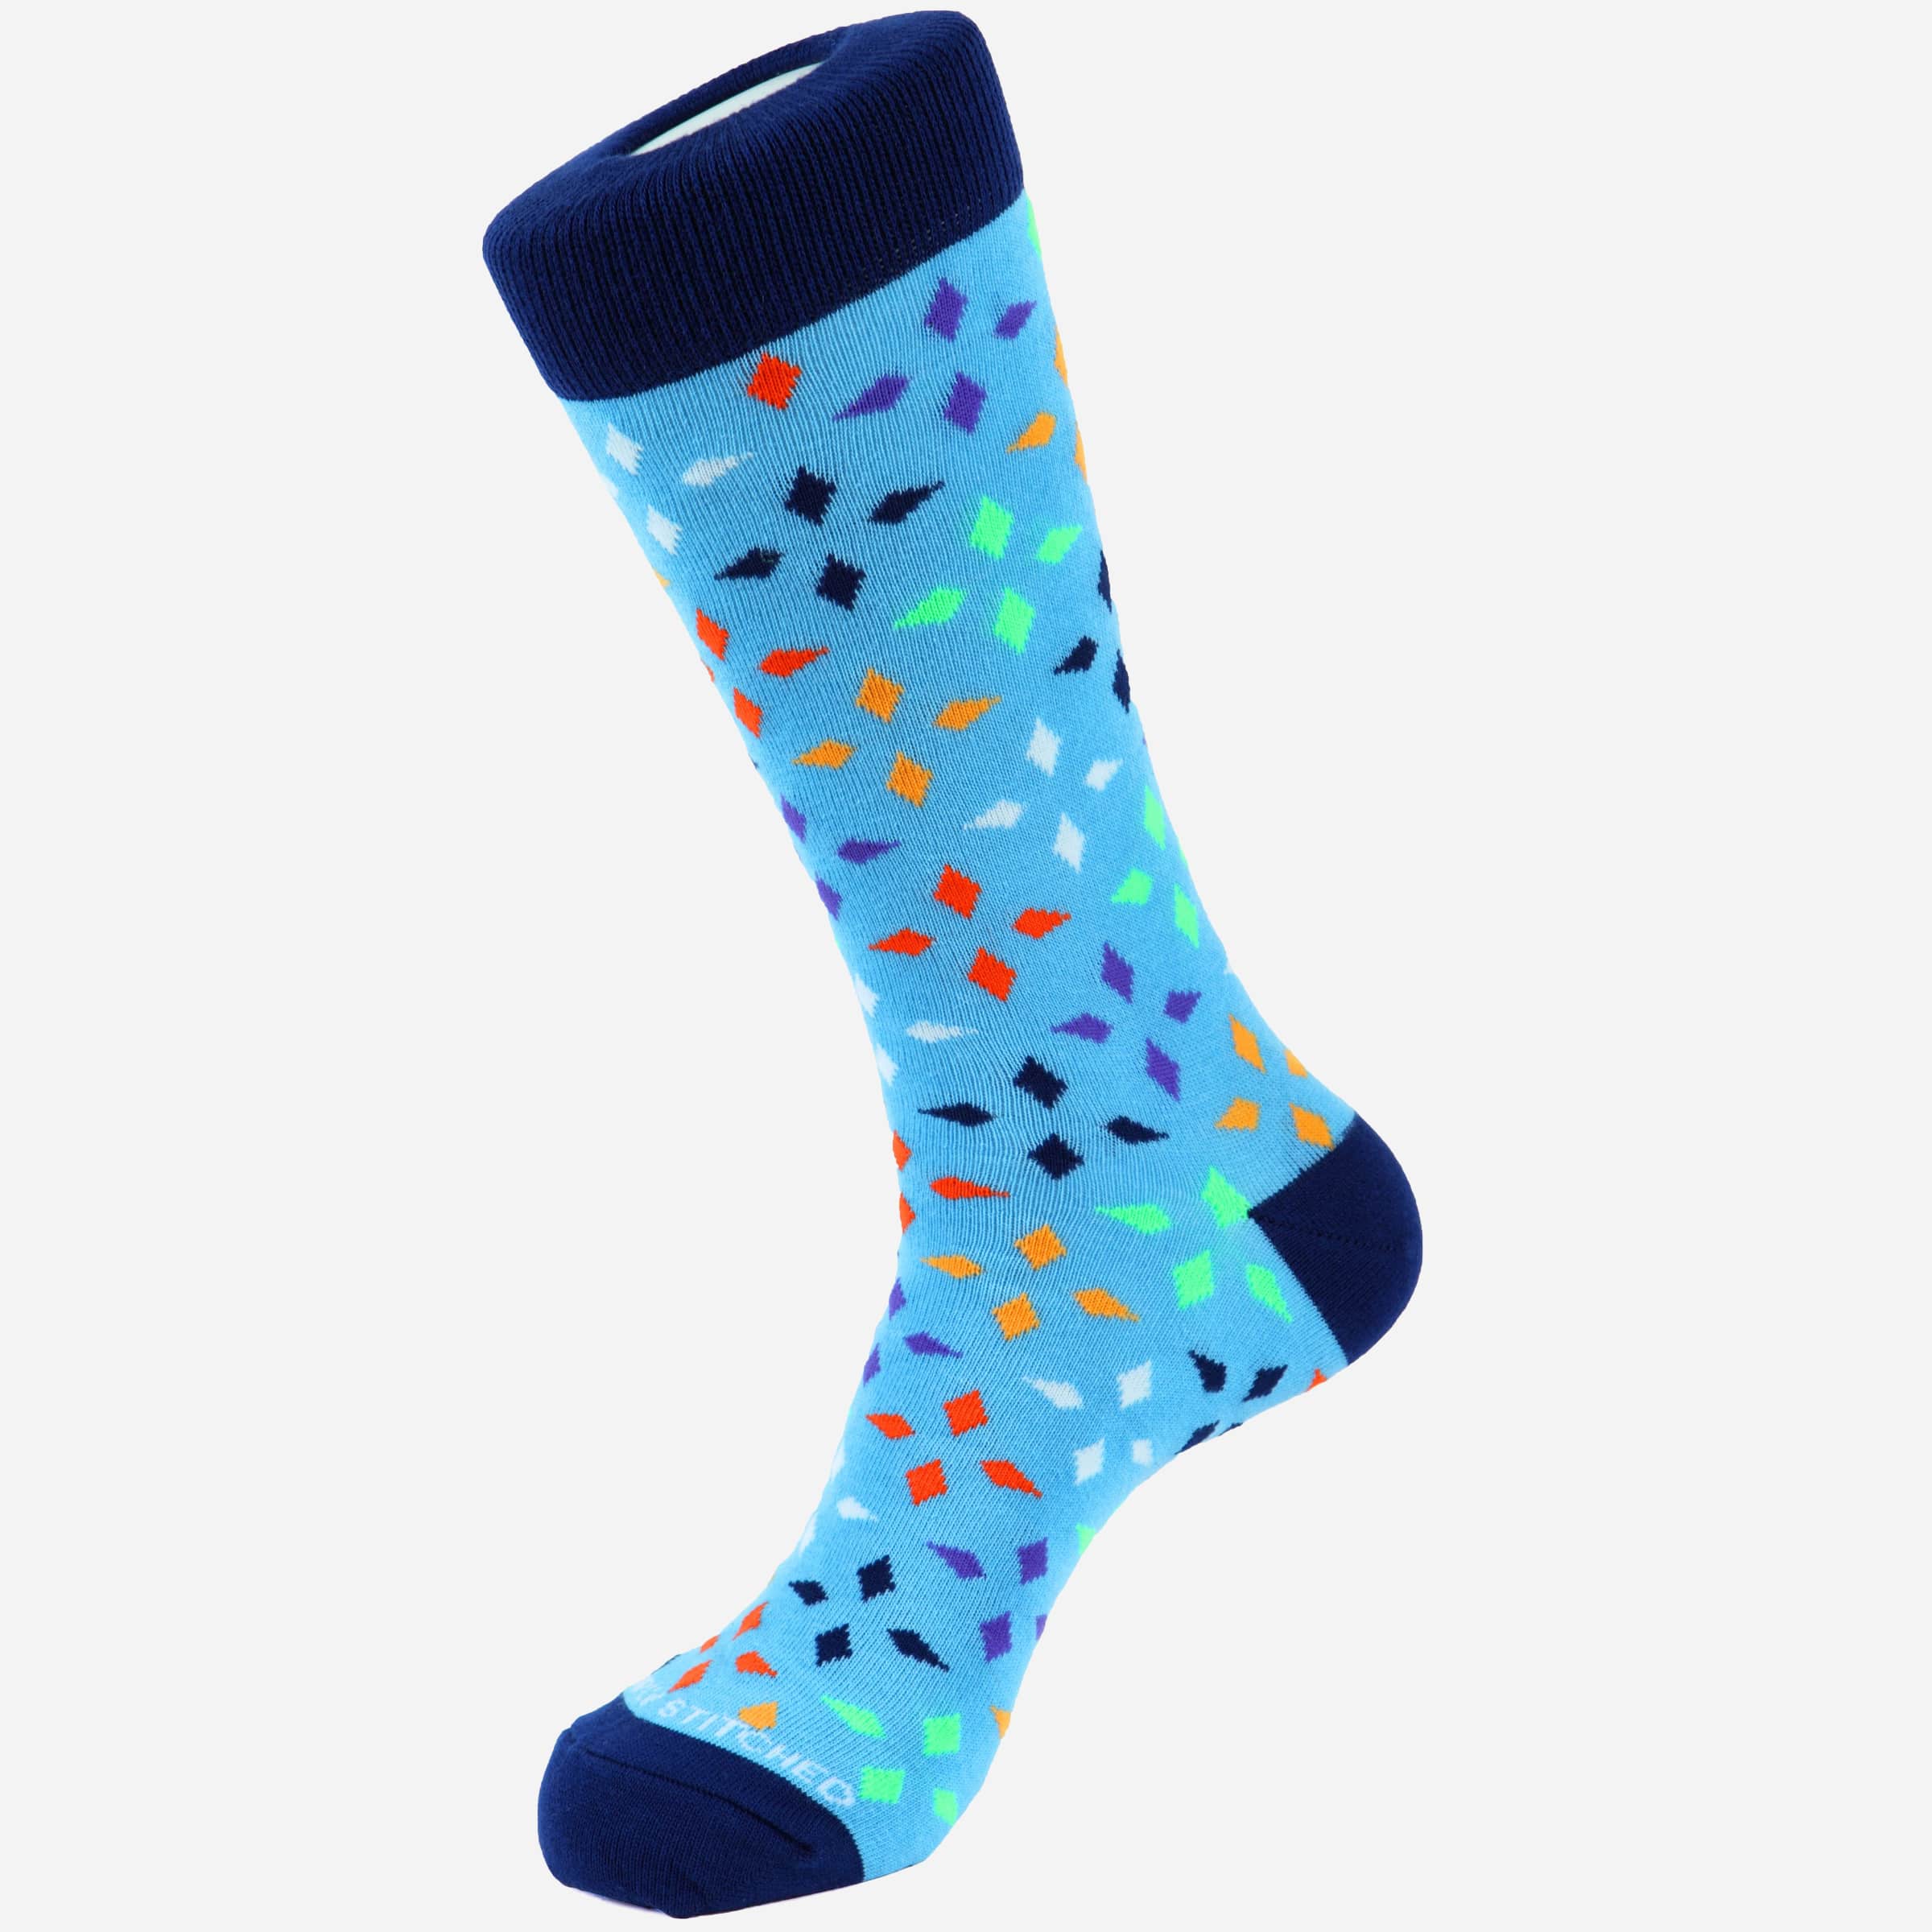 Diamond Socks - Men's Socks at Menzclub